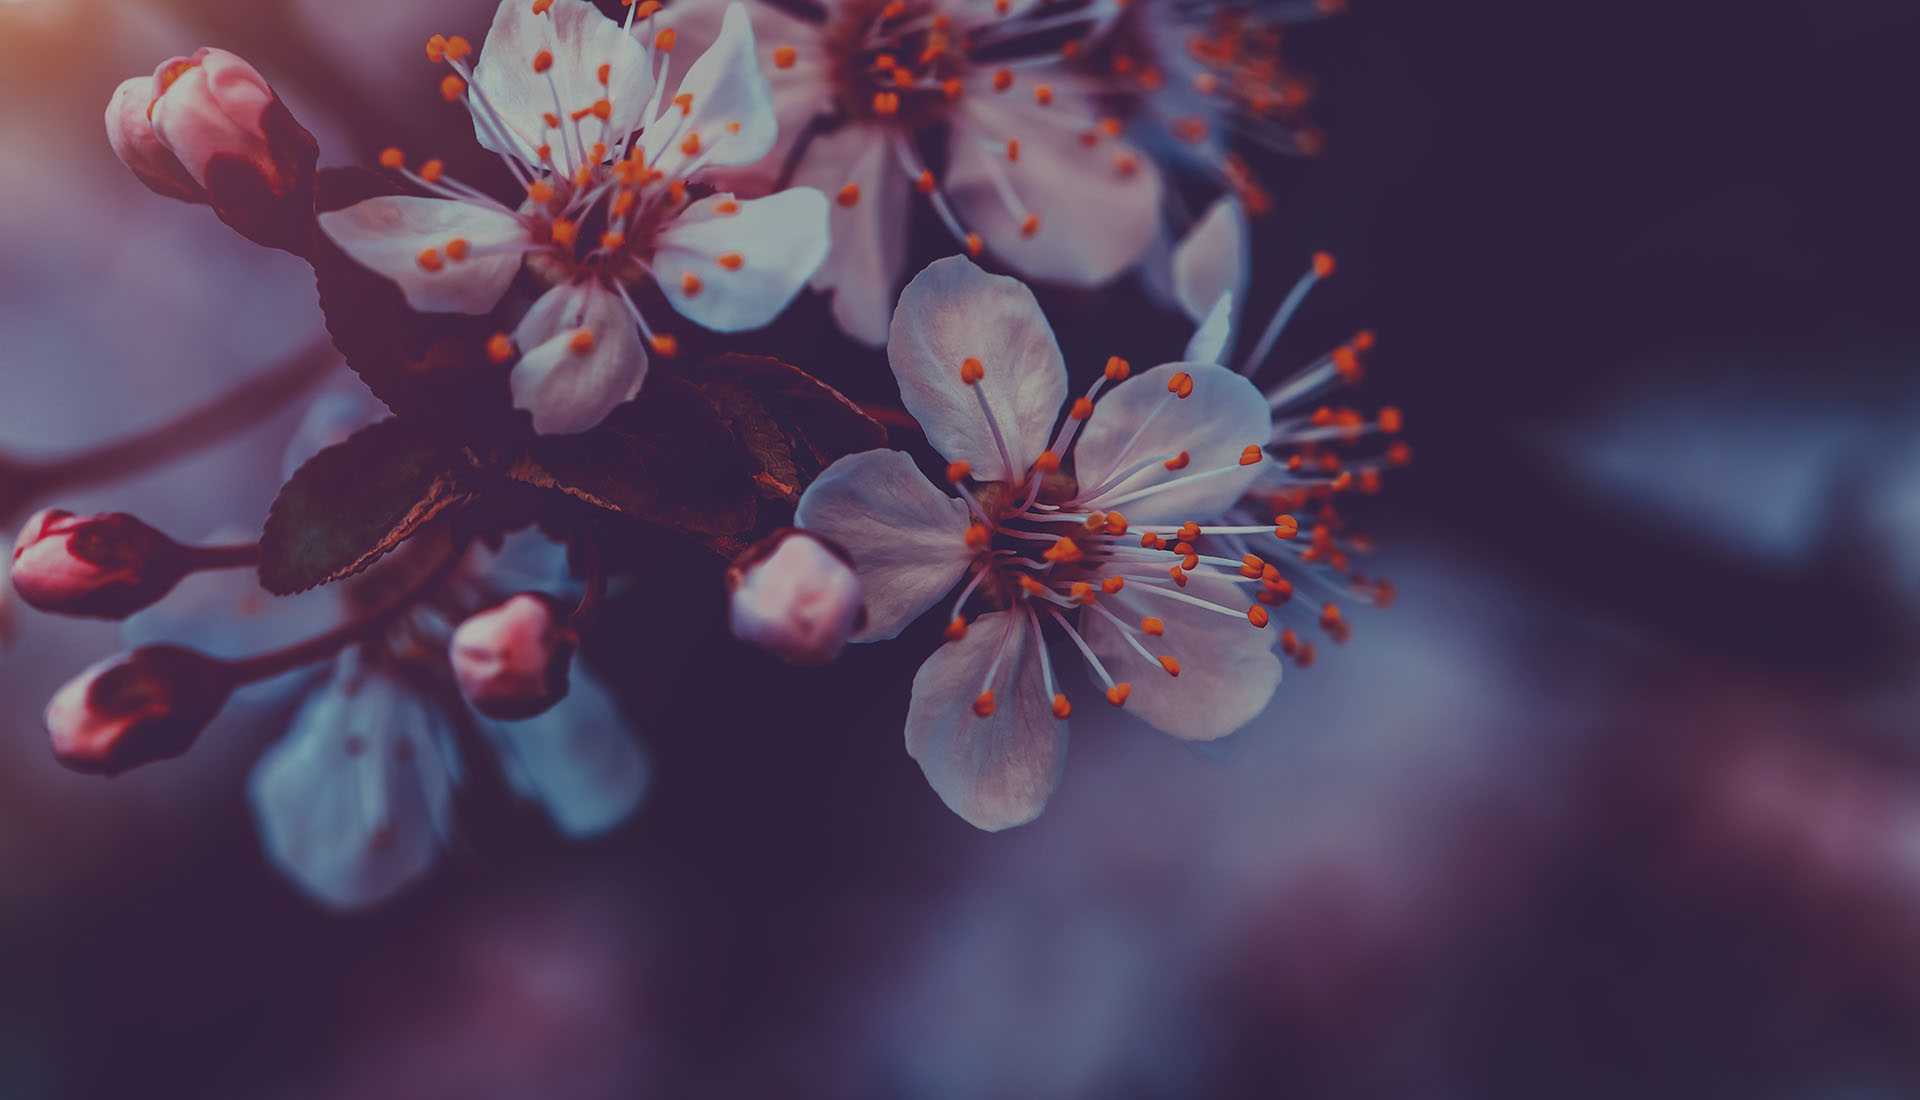 Flor de cerezo en estilo vintage, fondo natural abstracto, pequeñas flores blancas en la ramita de un árbol, belleza y frescura de la naturaleza primaveral.